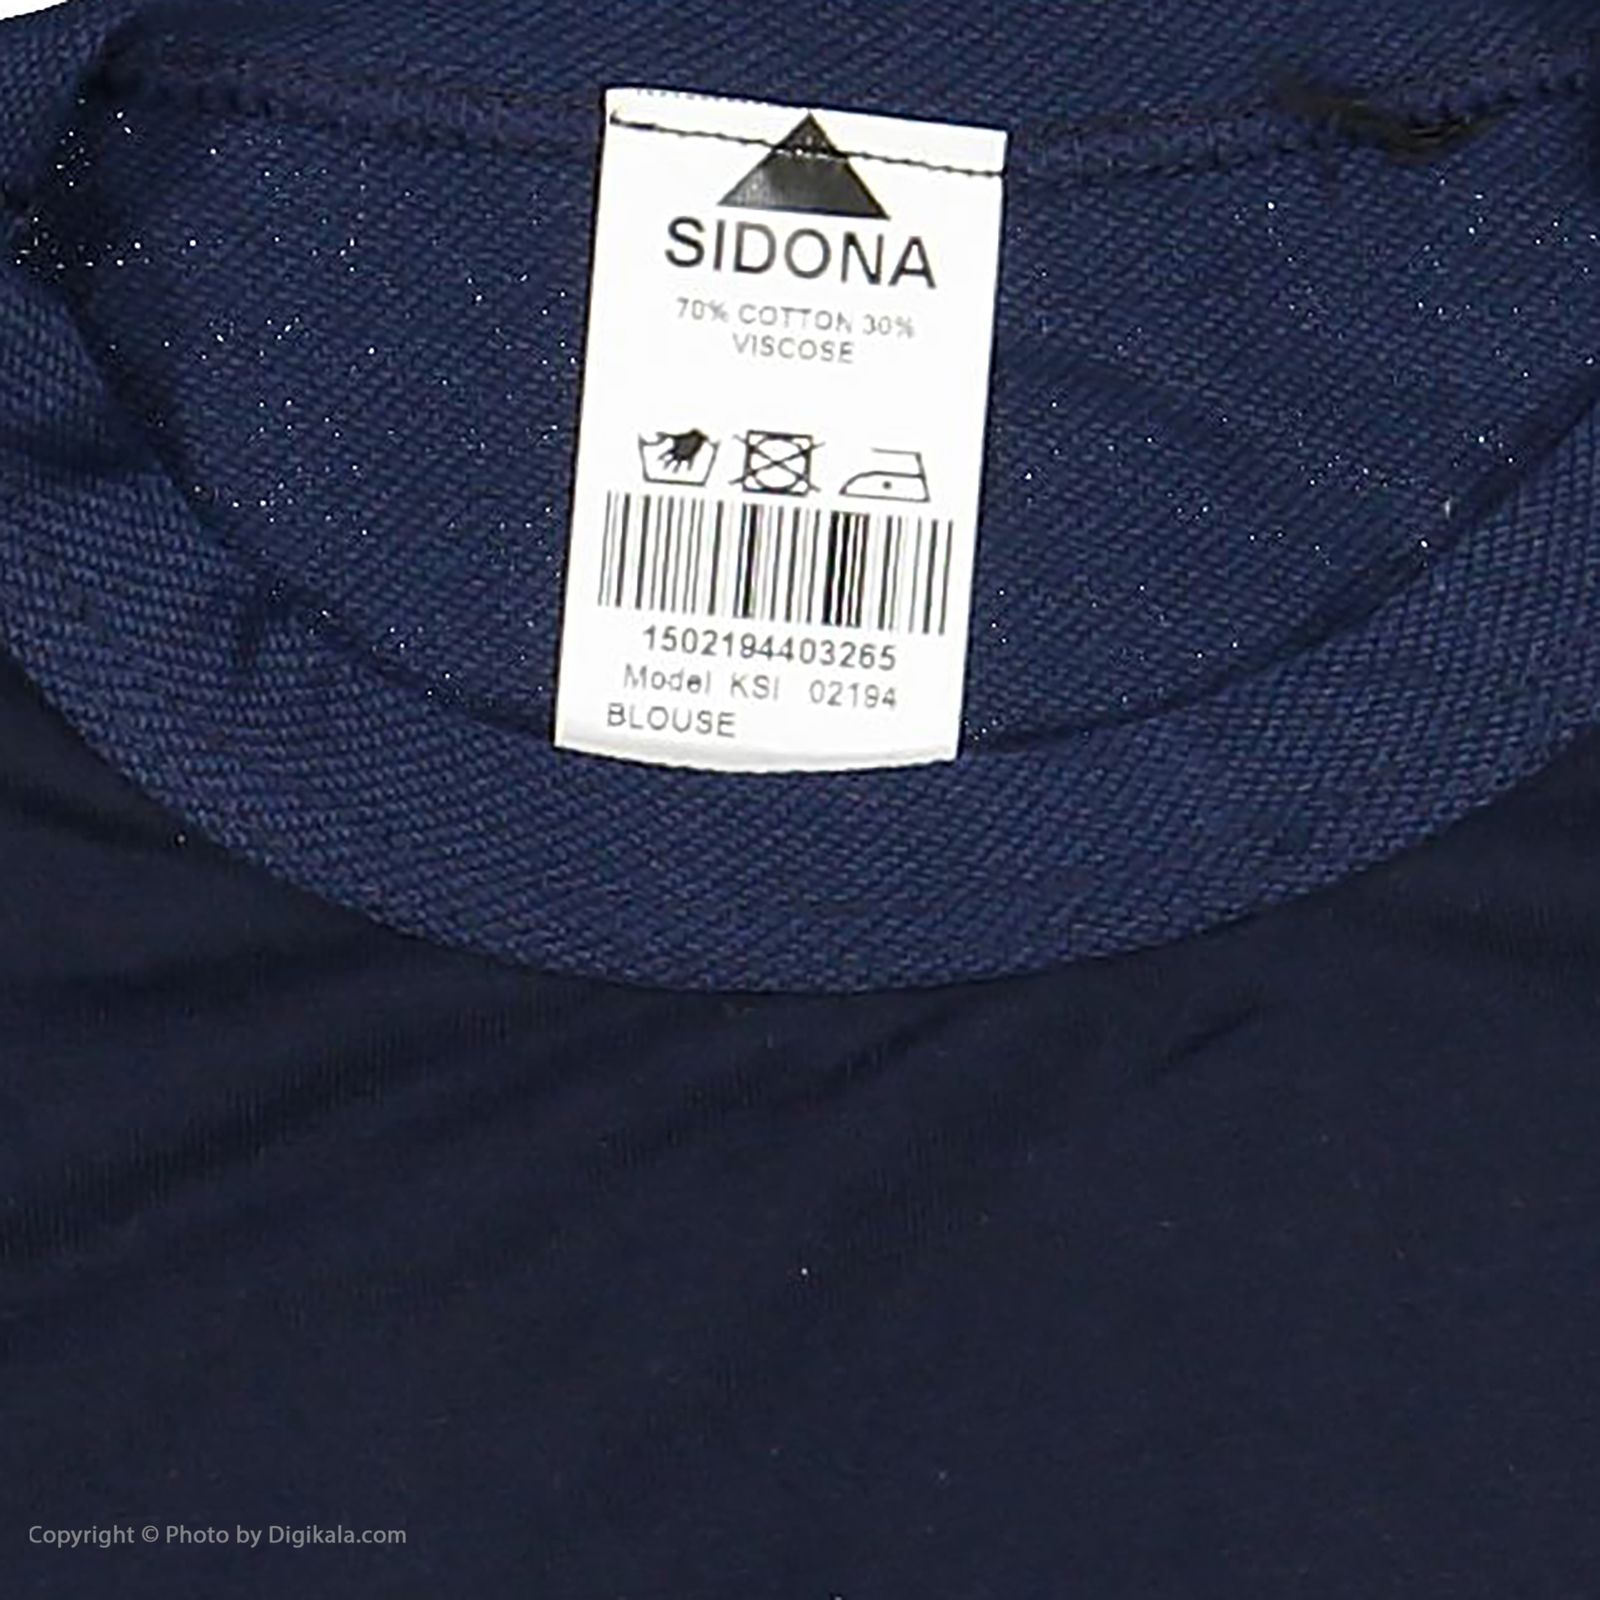 تی شرت پسرانه سیدونا مدل KSI02194-403 -  - 5